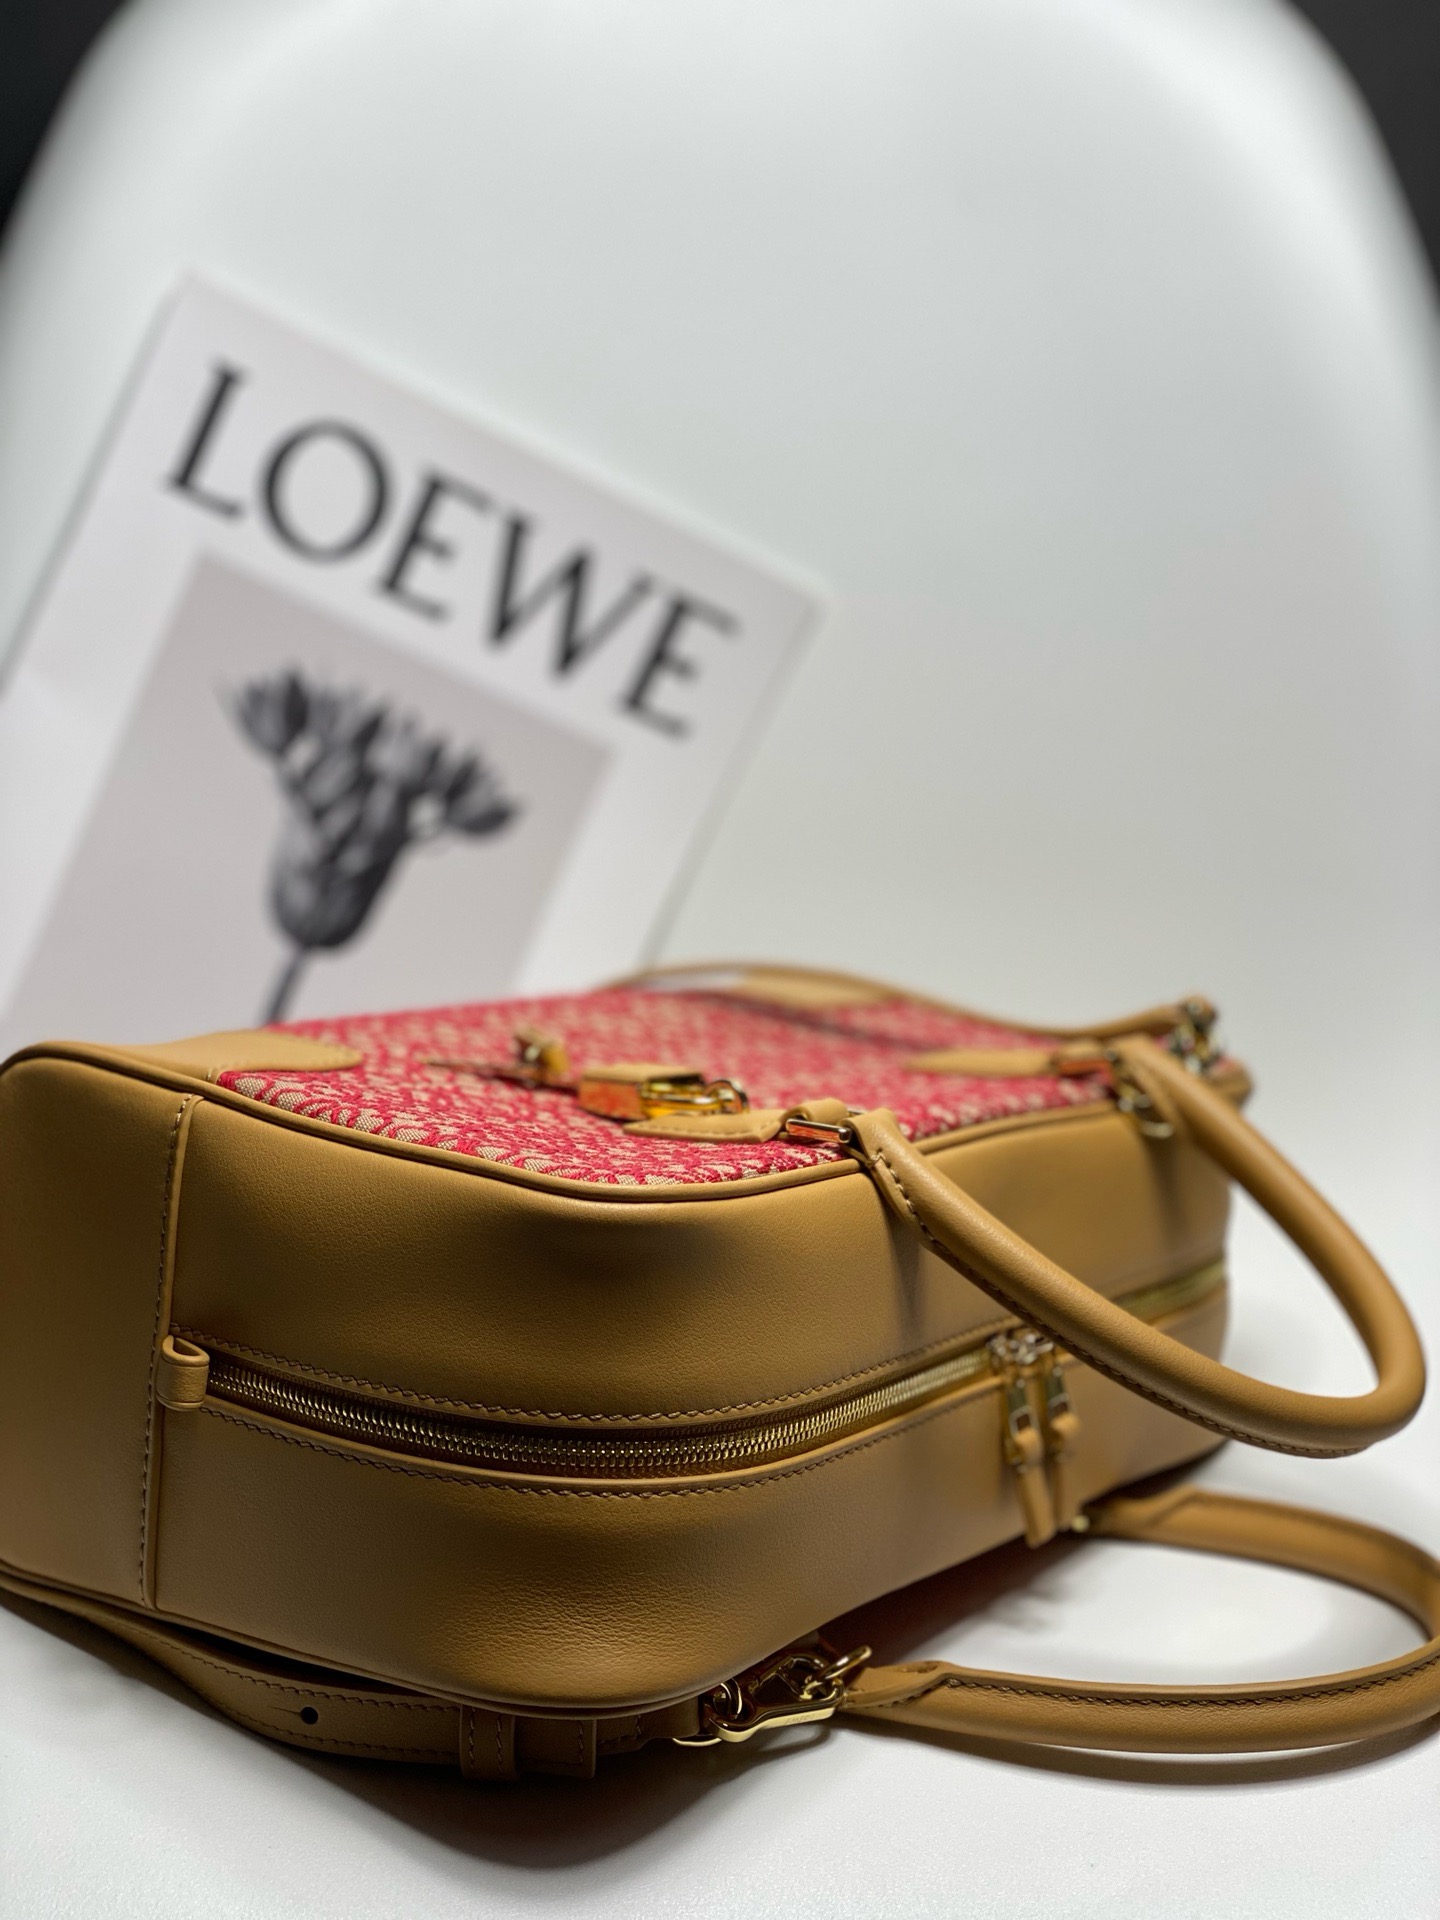 Loewe Original Leather tote 652388 brown&red